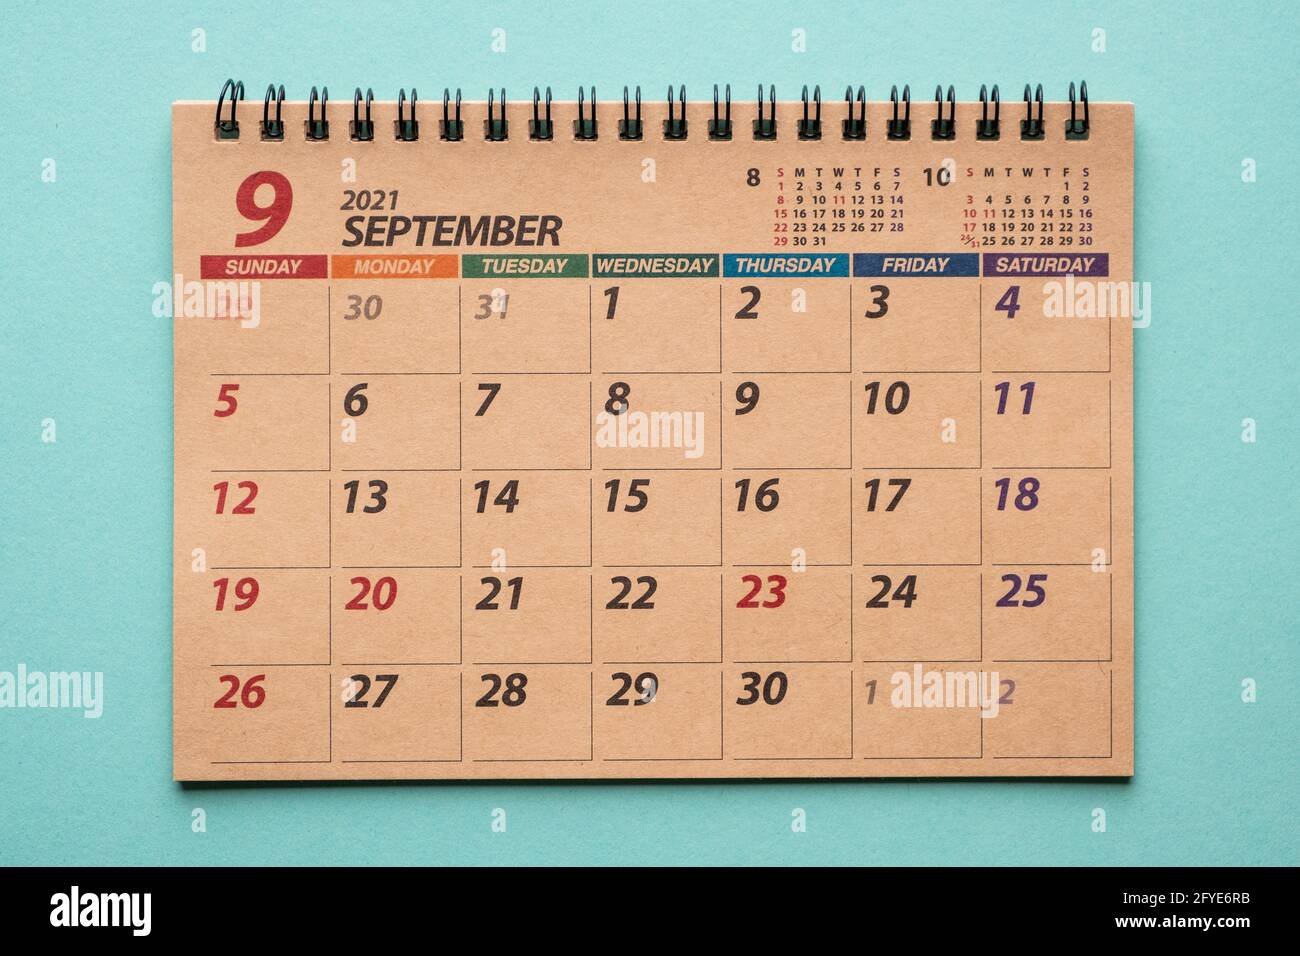 September 2021 desk calendar on green background Stock Photo